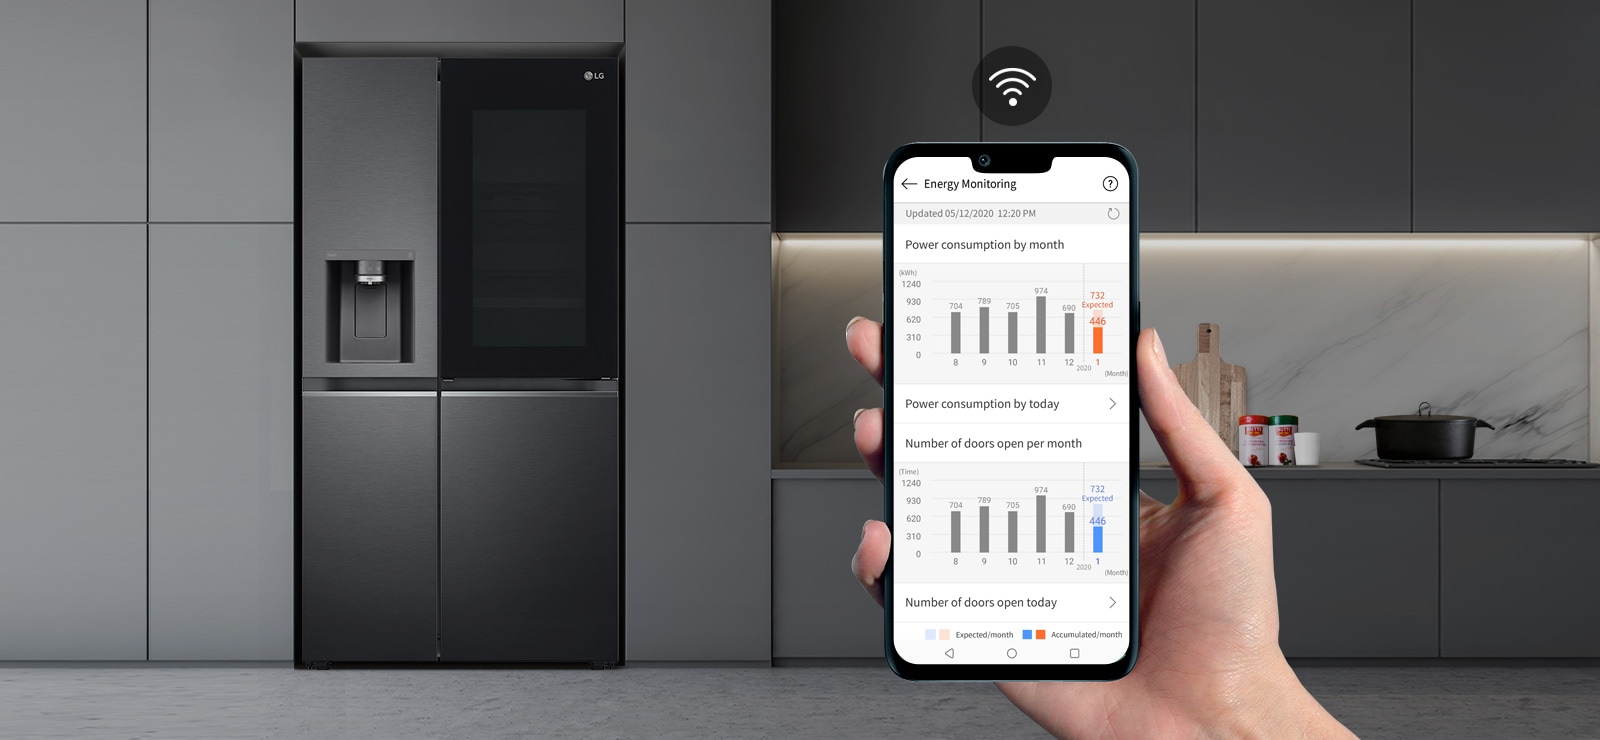 Im Hintergrund ist eine Küche mit Kühlschrank zu sehen, im Vordergrund eine Hand, die ein Telefon hält, auf dem die App LG ThinQ App anzeigt wird. Die App zeigt die Wartungsstatistiken an. Über dem Telefon befindet sich das WLAN-Symbol.